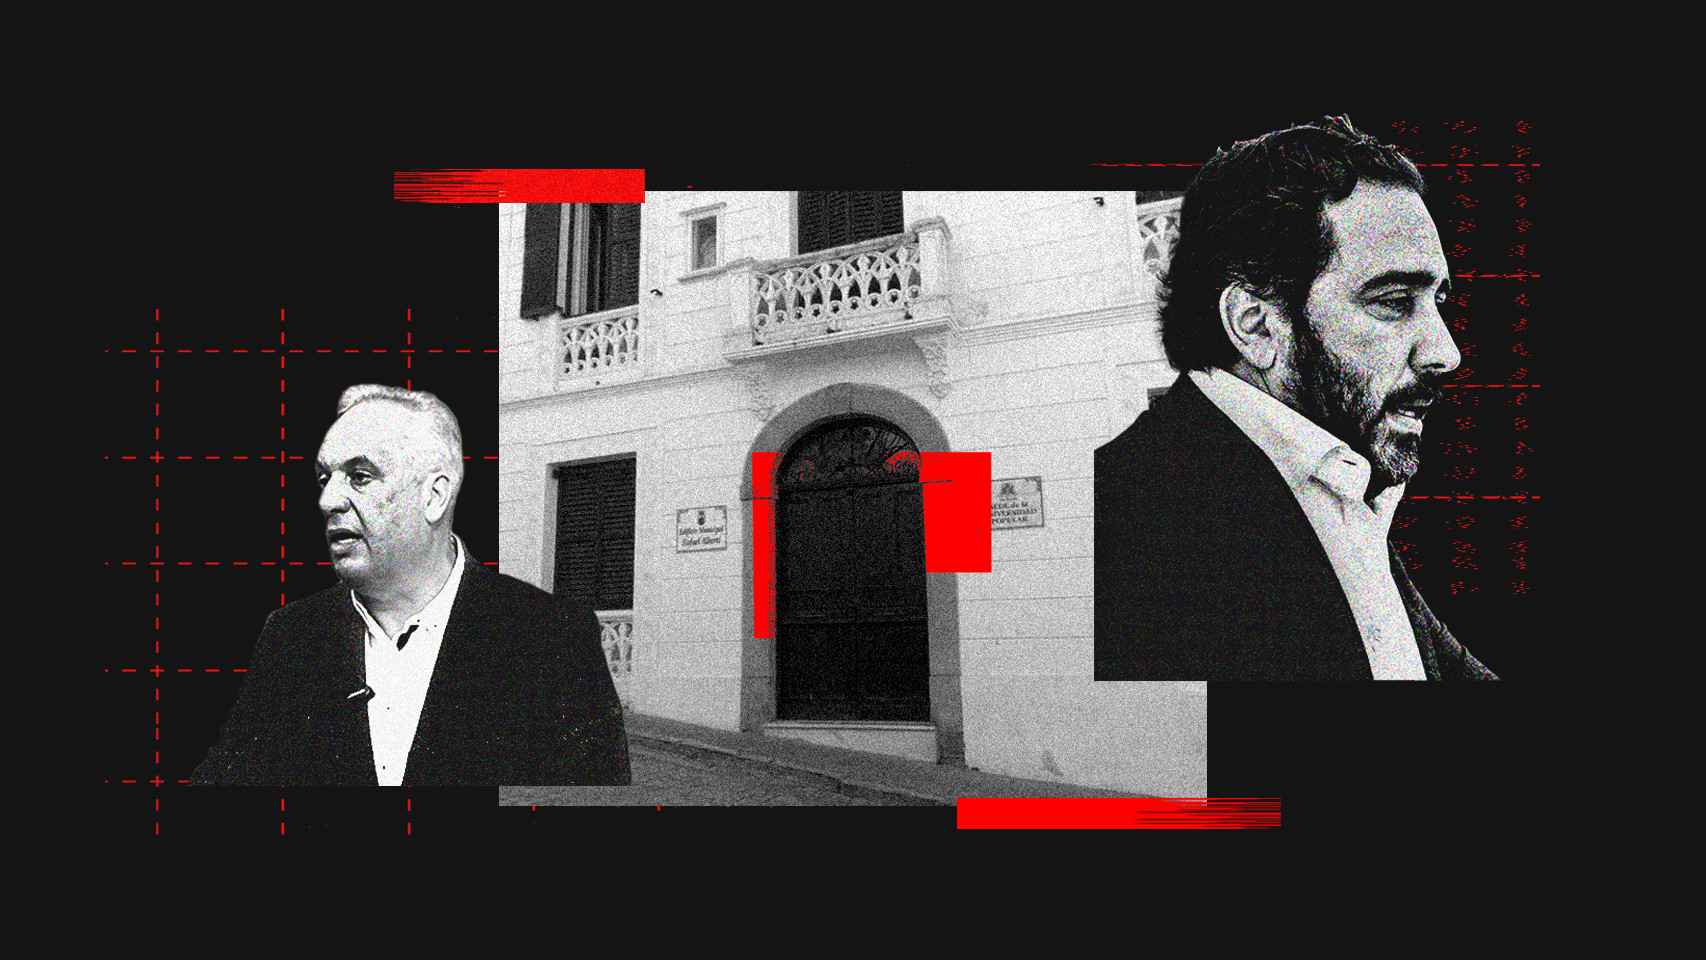 Un alcalde y diputado del PSOE adjudicÃ³ 2 hoteles a Aldama para que los explote gratis 40 aÃ±os